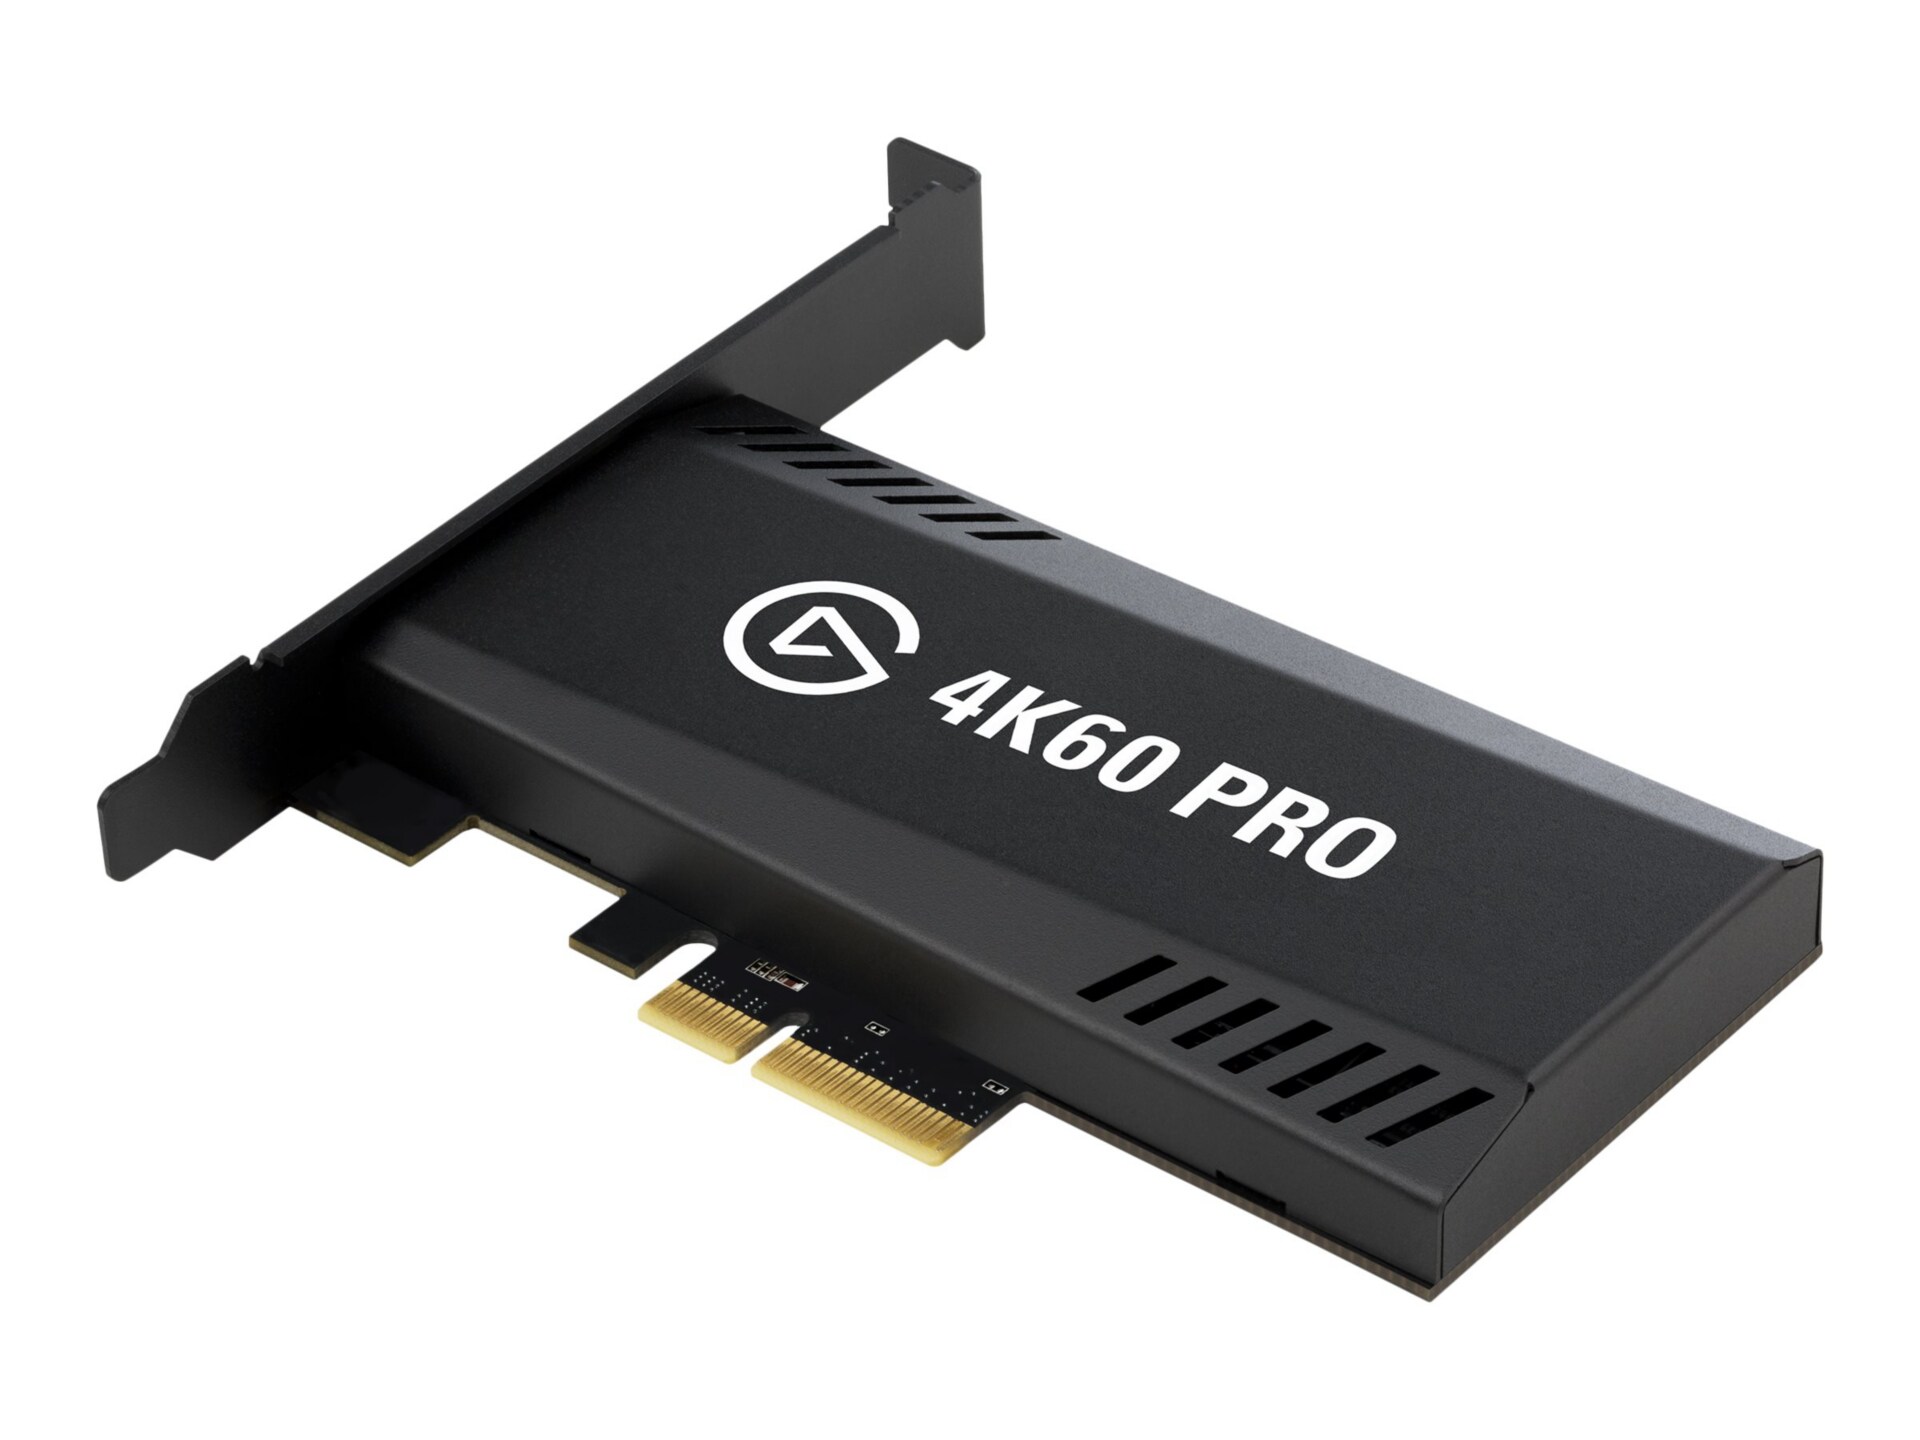 DIGITNOW 4K60 Pro PCIe Capture Card 4K60 Game Capture on OnBuy